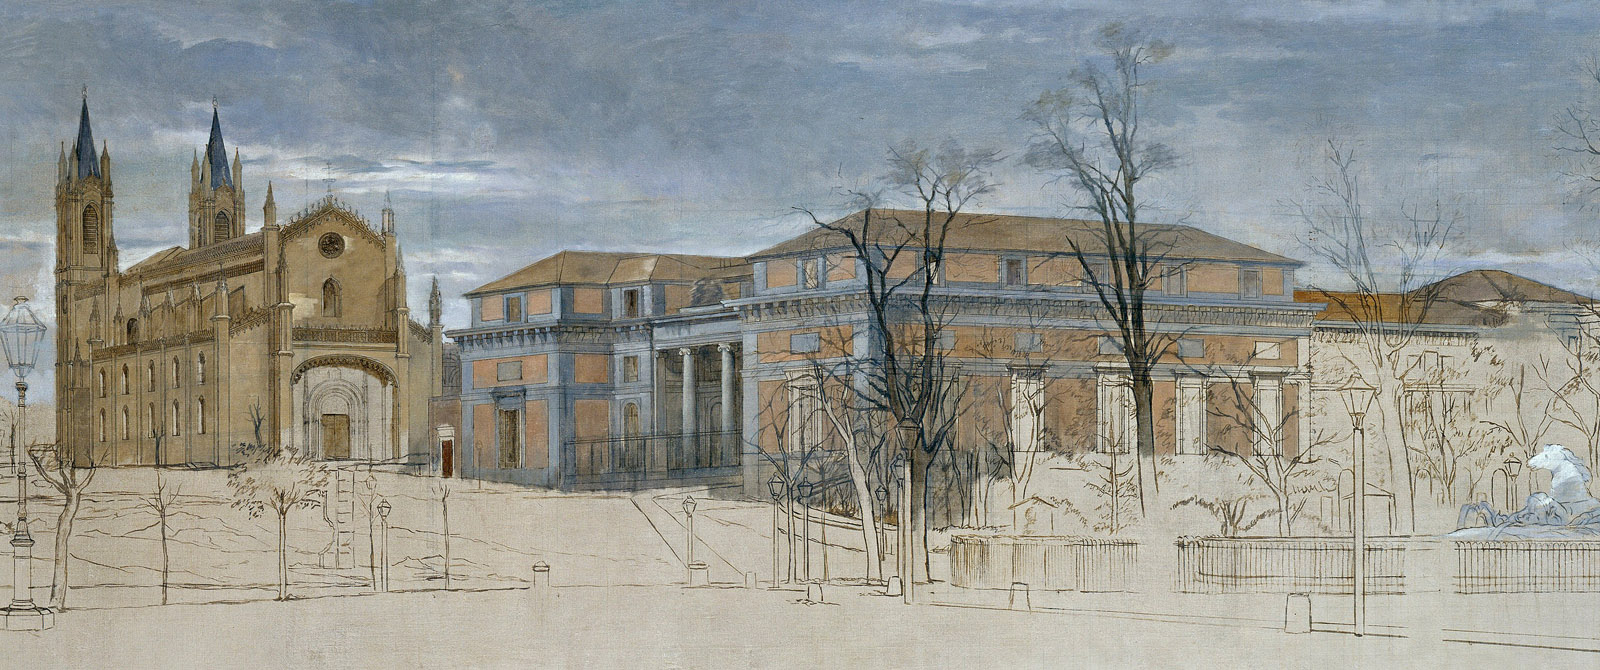 Detalle de El Salón del Prado y la Iglesia de San Jerónimo, h. 1871. Eduardo Rosales. Museo Nacional del Prado.